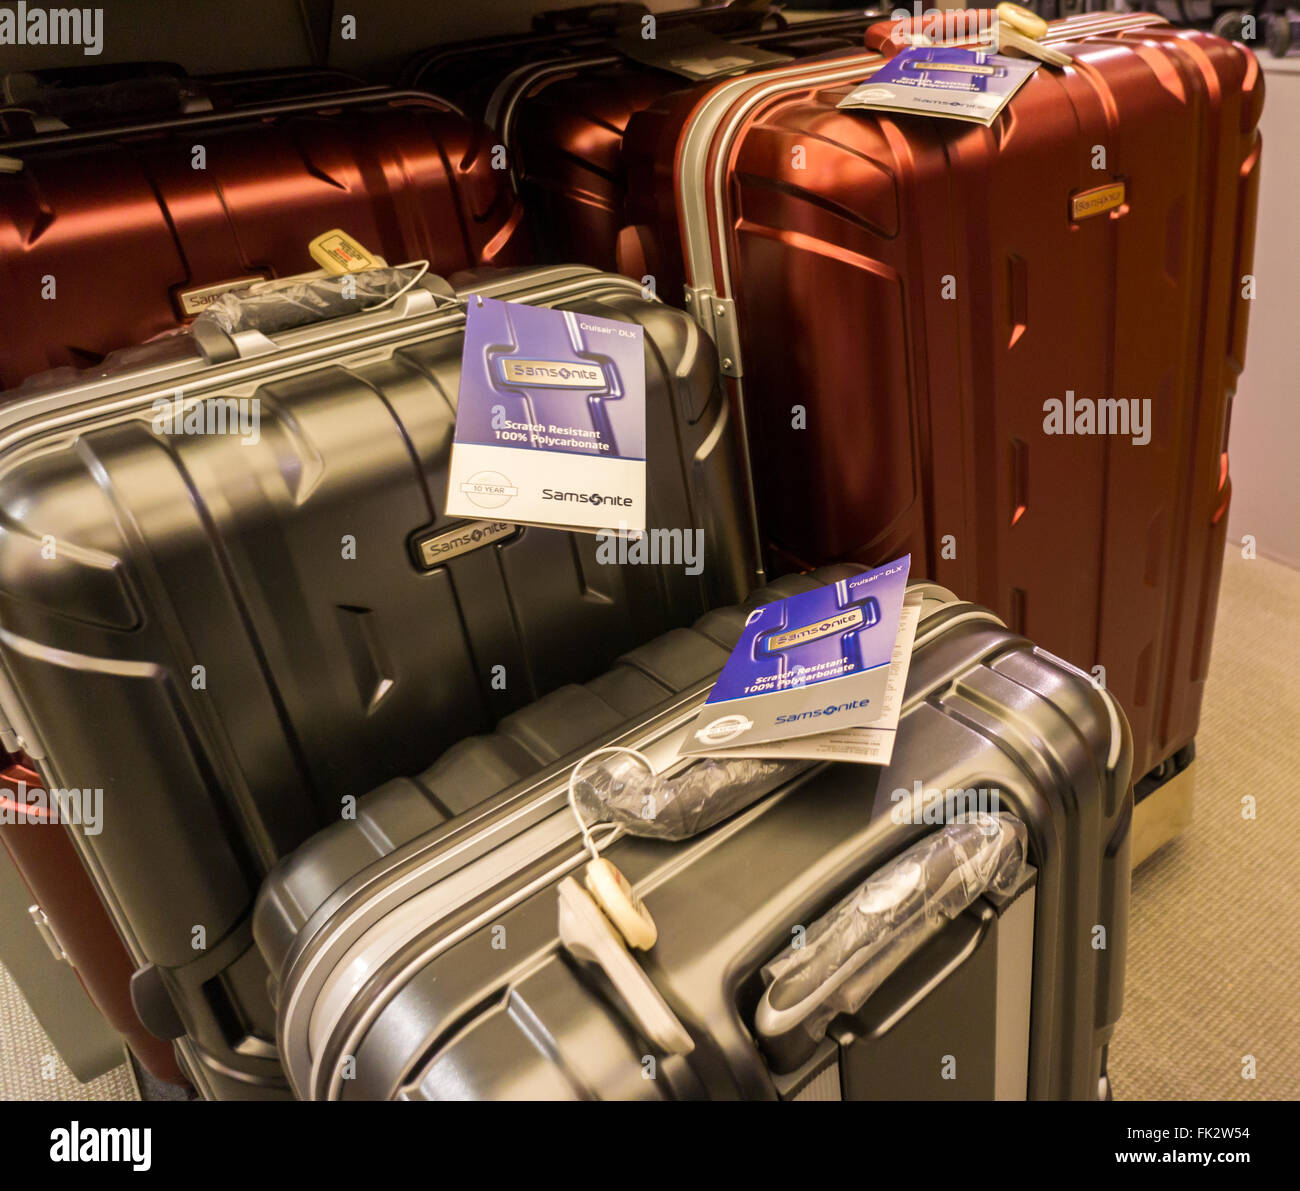 Marque Samsonite bagages dans Macy's à New York le vendredi 4 mars 2016.  Samsonite a annoncé qu'elle a accepté d'acheter concurrent Tumi dans une  transaction d'une valeur de près de 1,8 milliards